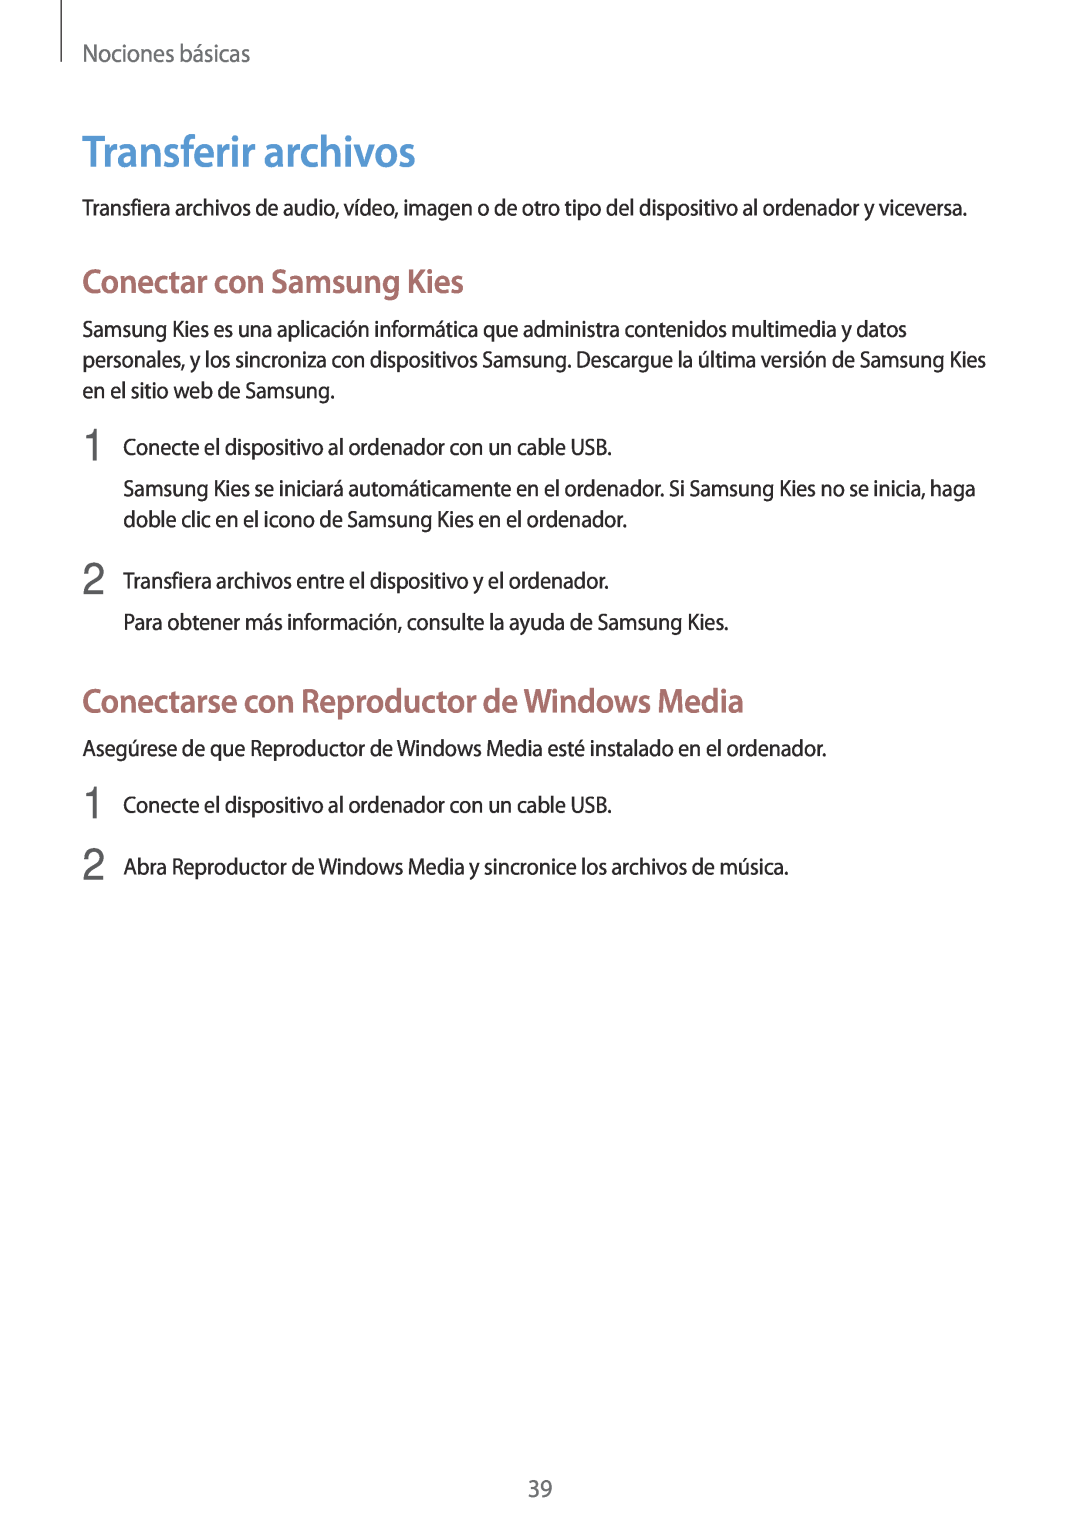 Samsung SM-T3150ZWAATL manual Transferir archivos, Conectar con Samsung Kies, Conectarse con Reproductor de Windows Media 